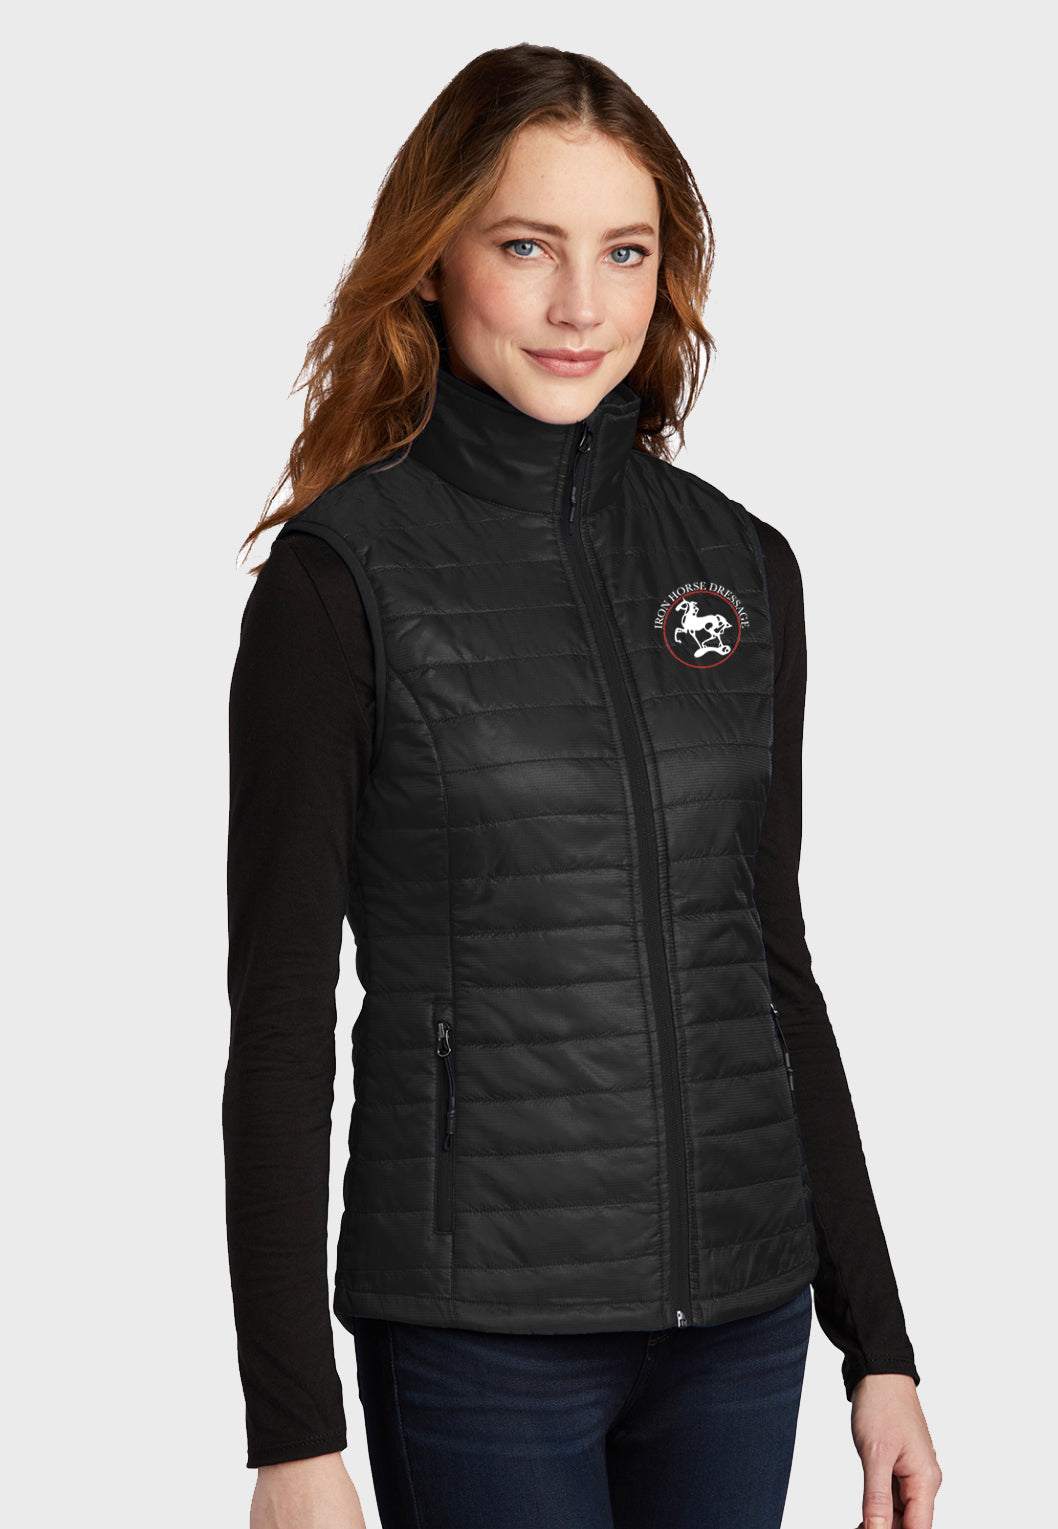 Iron Horse Dressage Port Authority® Ladies Packable Down Vest - Black